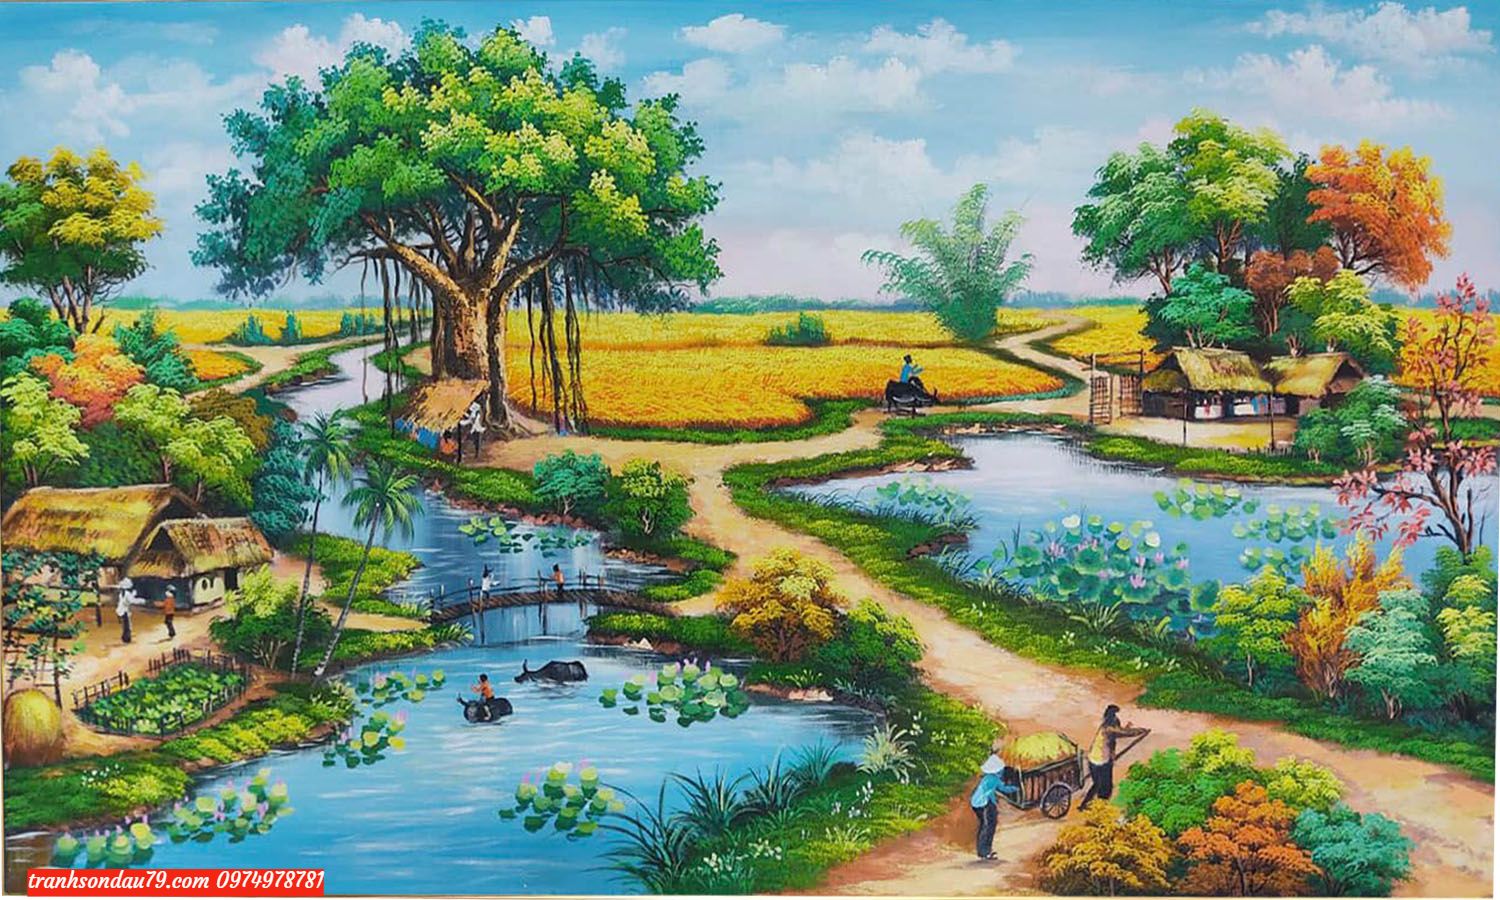 Tranh phong cảnh đồng quê việt nam ST66 - Tranh sơn dầu Nguyễn Thái học -  Tranh sơn dầu hà nội